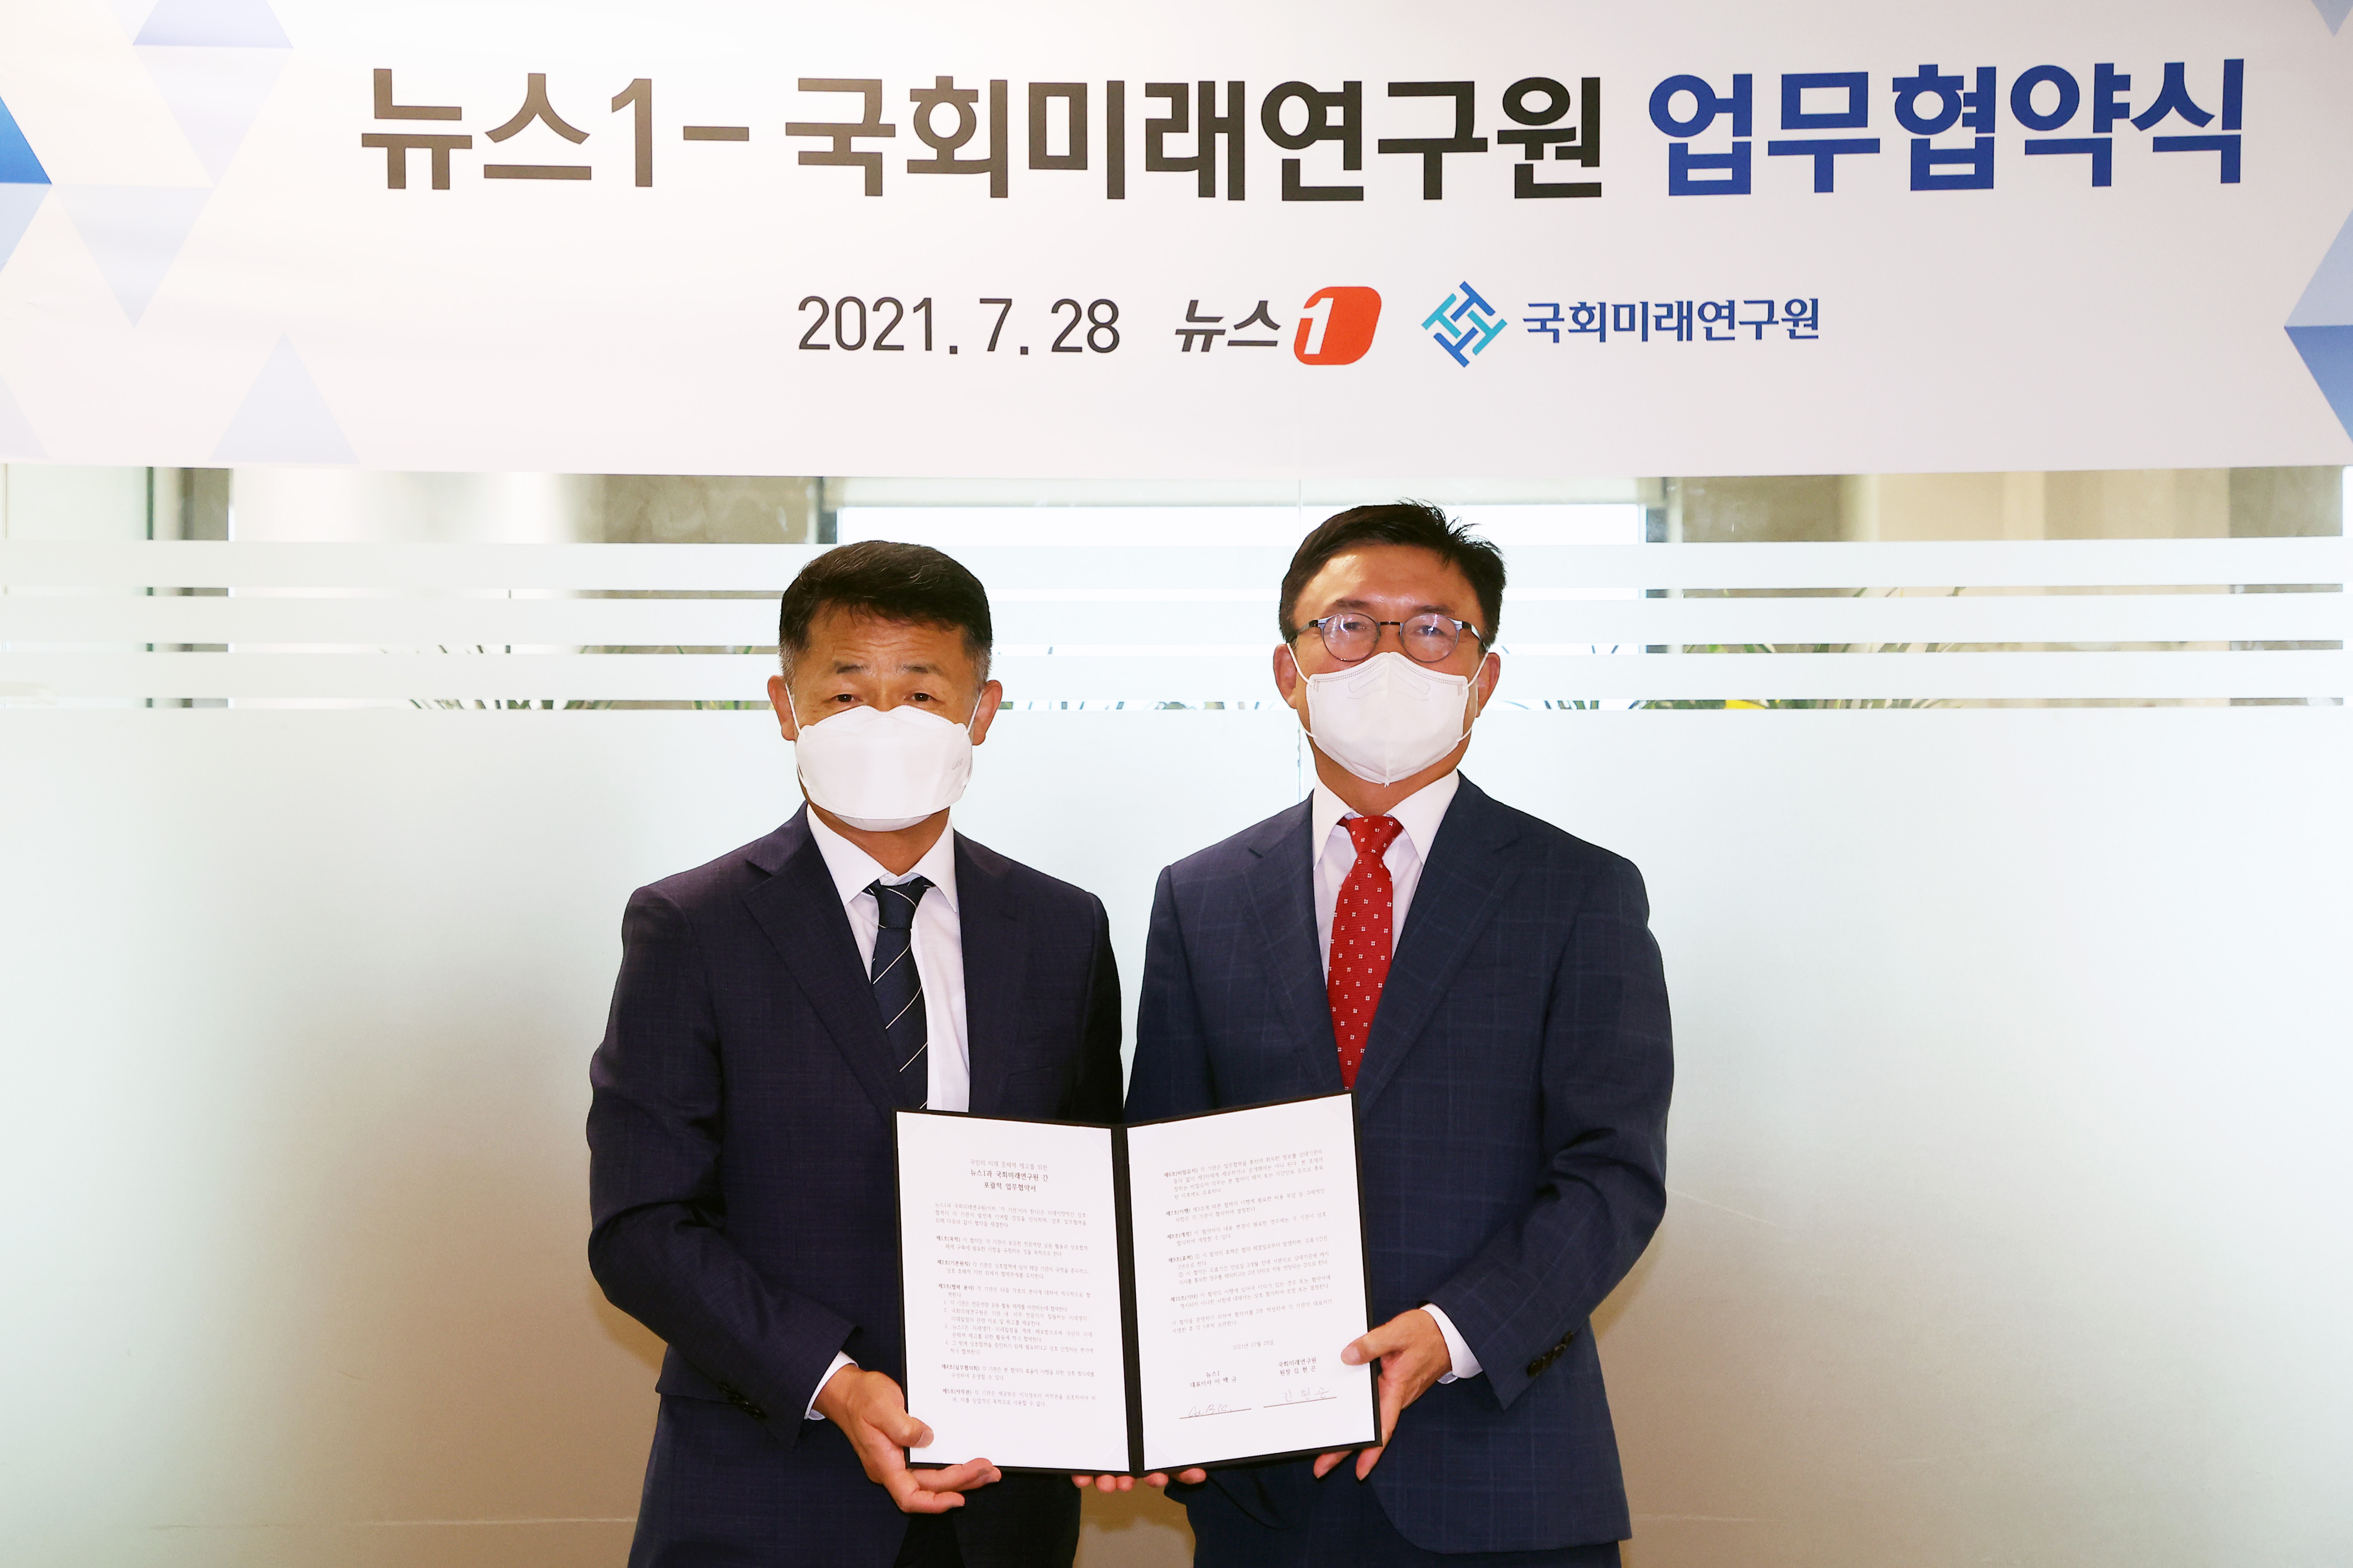 [07.28] 국회미래연구원·뉴스1 업무협약 체결2